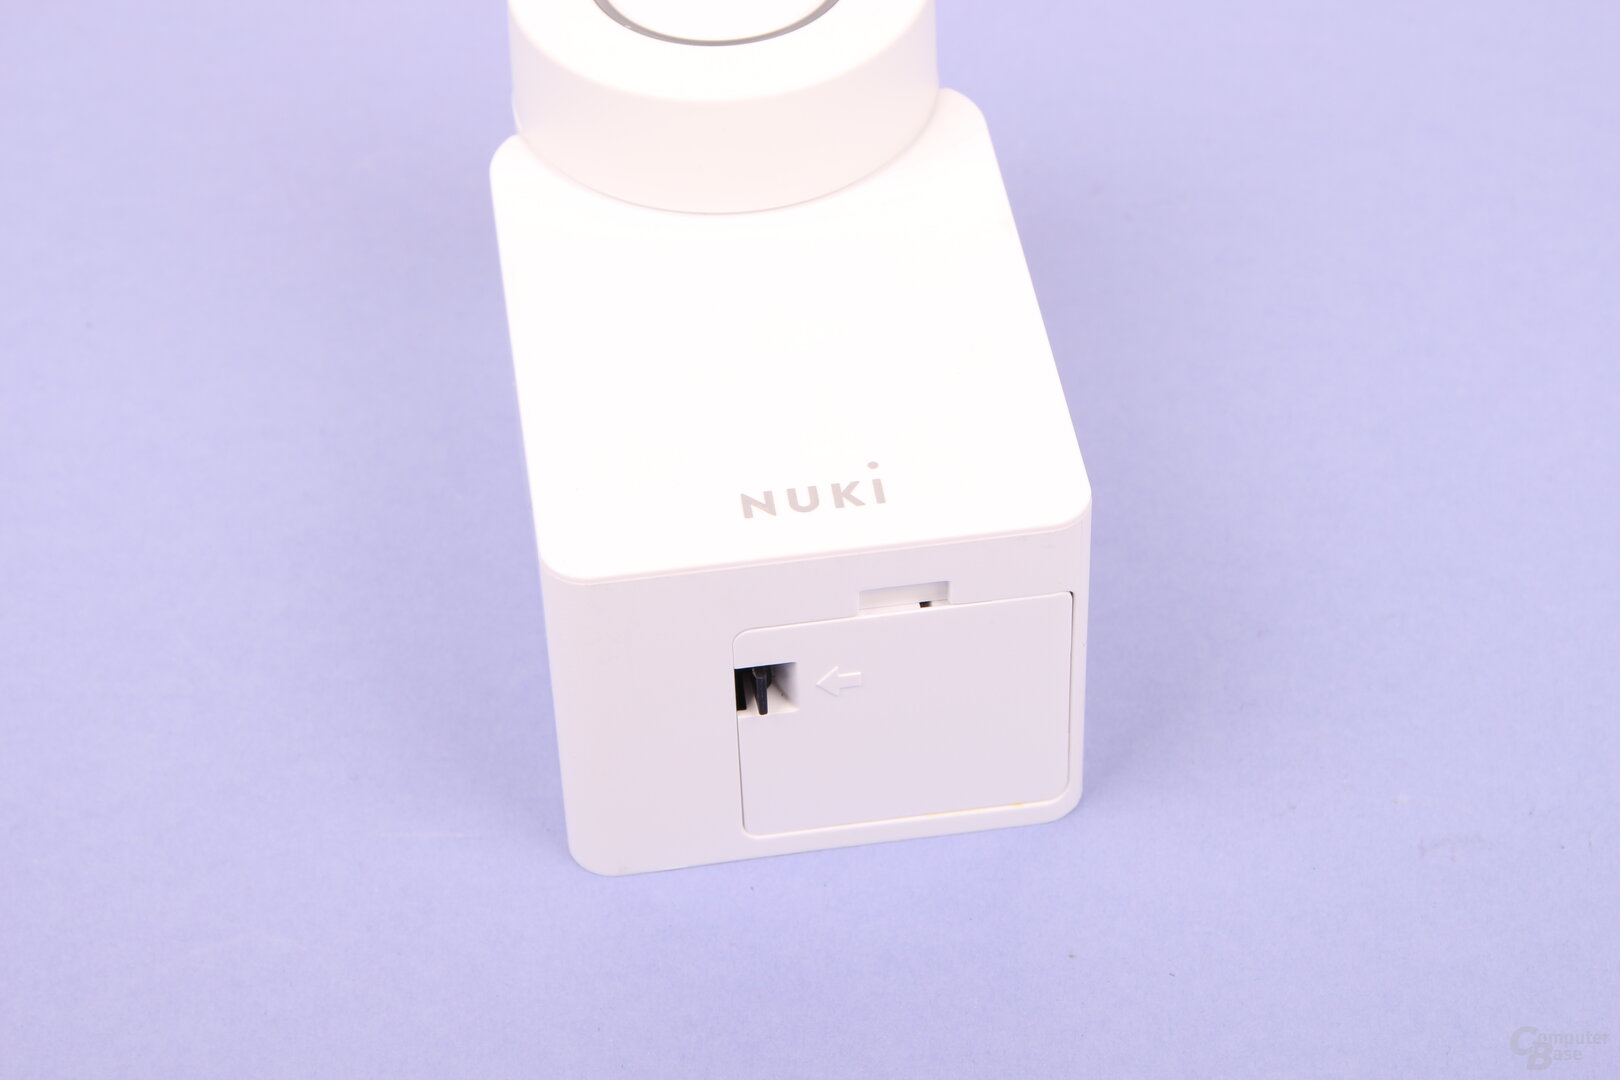 Nuki Smart Lock 3.0